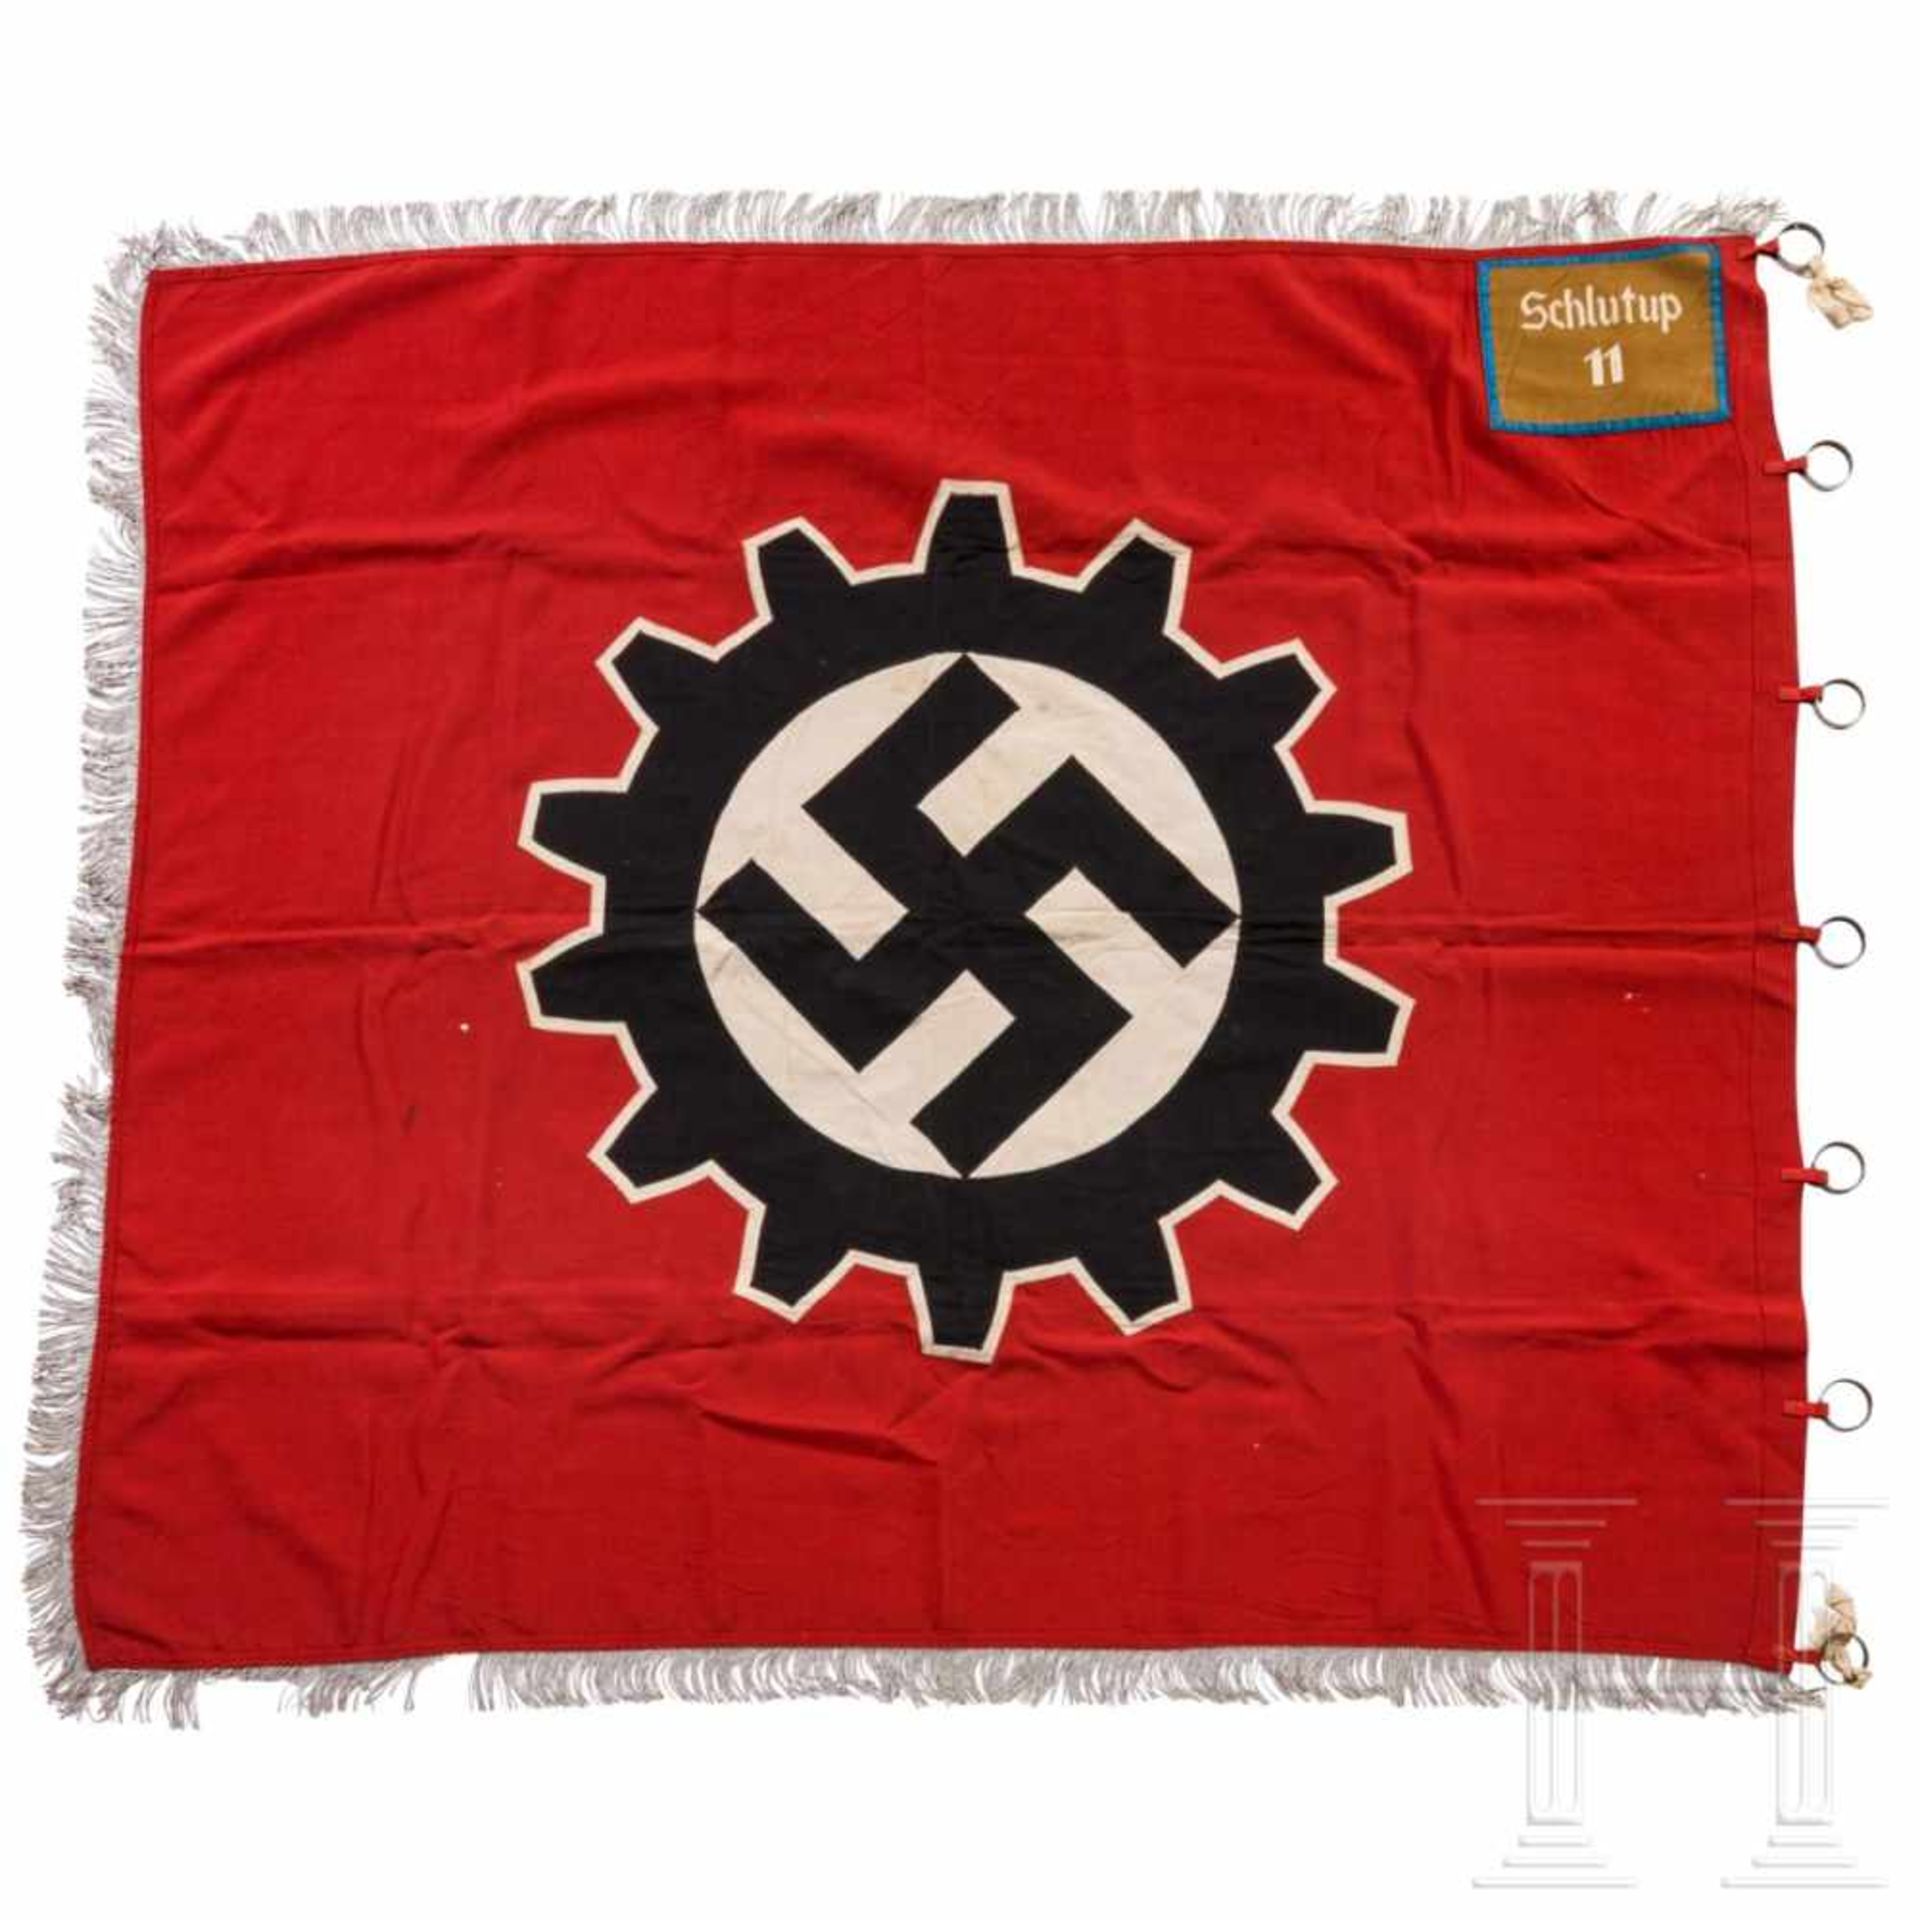 Fahne der DAF-Ortsgruppe "Schlutup 11" - Bild 2 aus 4